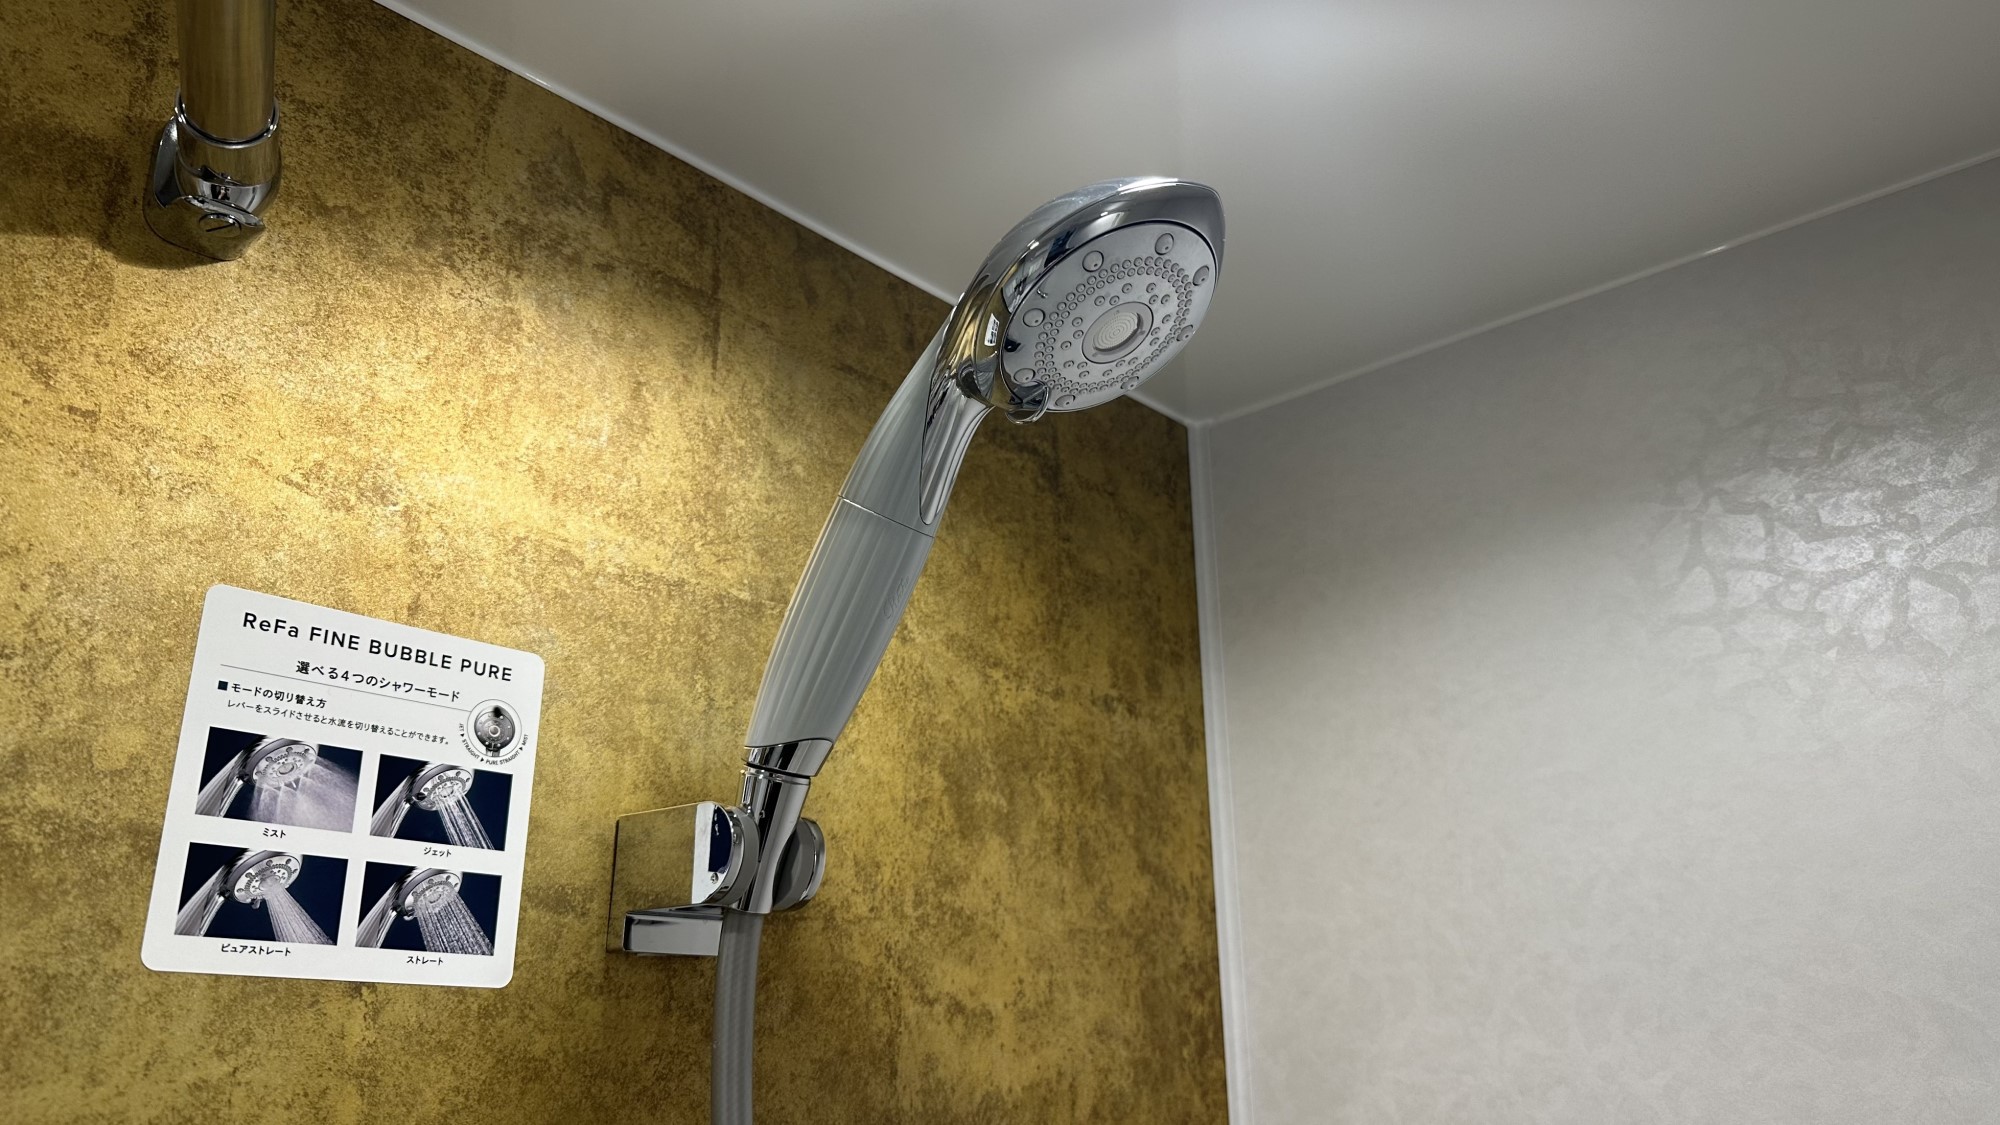 【スーペリアツインルーム】リファの最新型シャワーヘッド